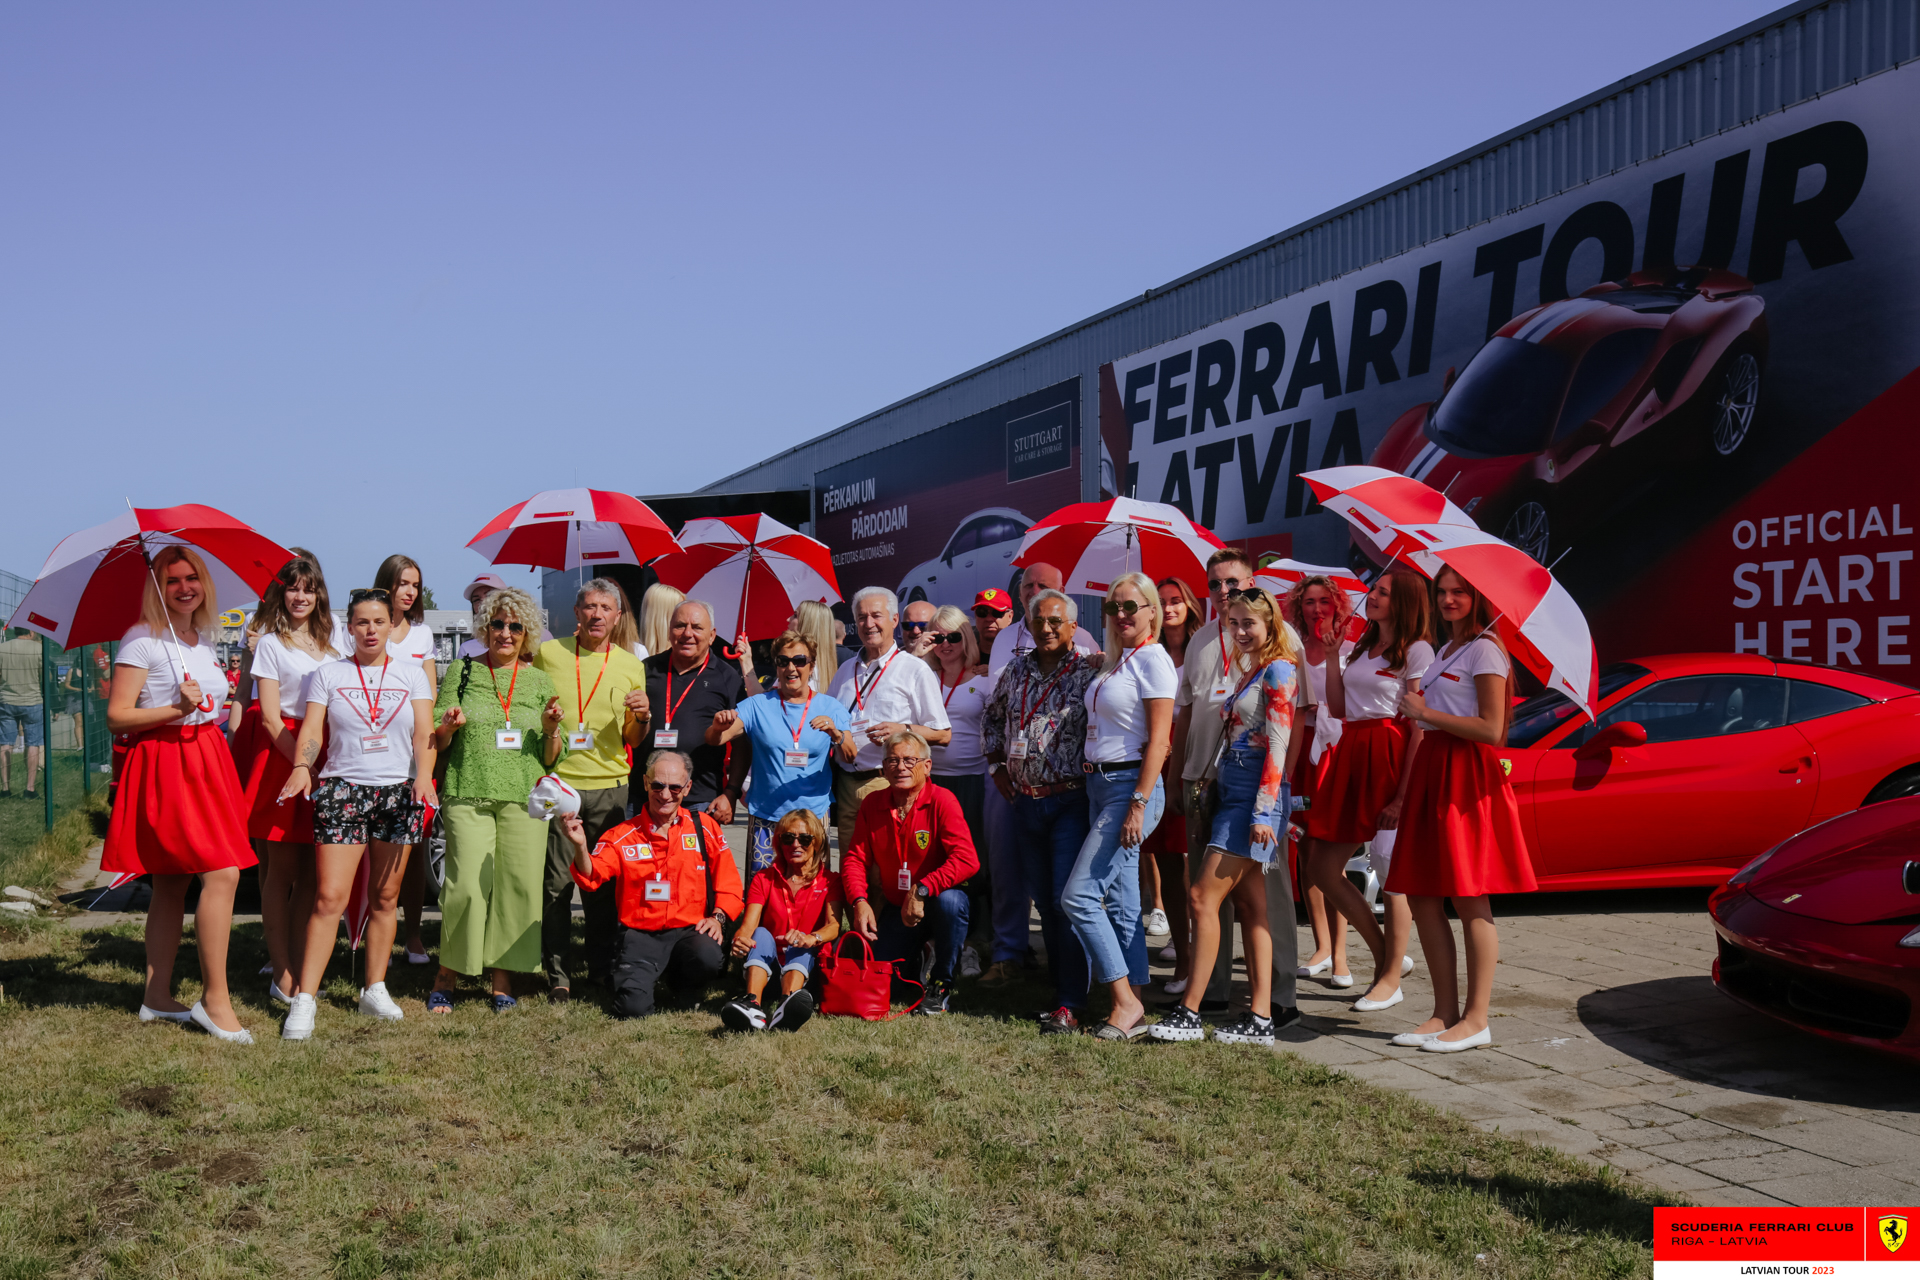 Ferrari owners and grid girls.